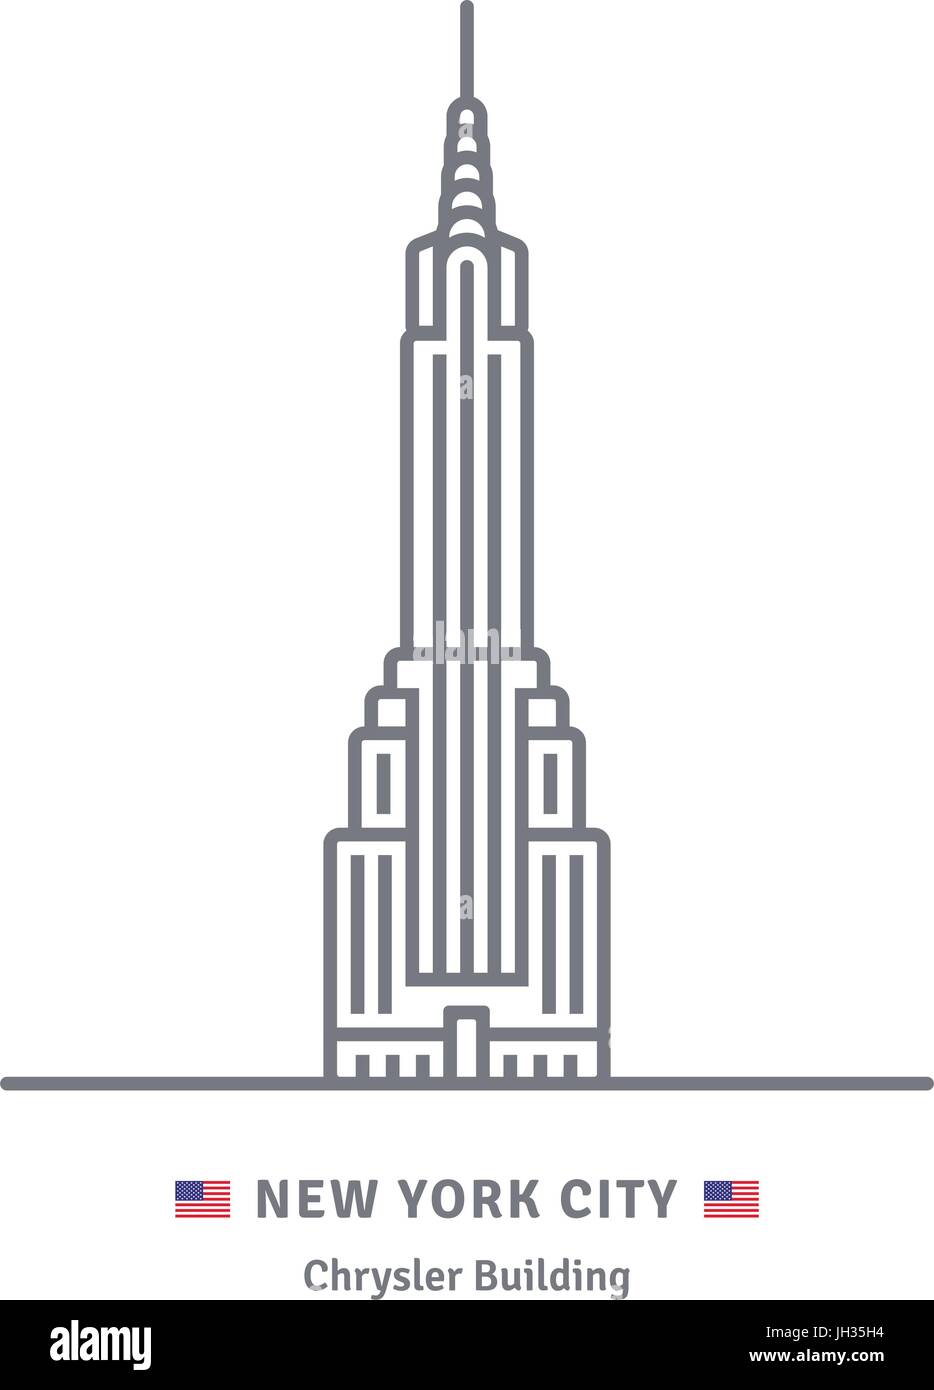 L'icône de la ligne de la ville de New York. Chrysler building et US flag vector illustration. Illustration de Vecteur